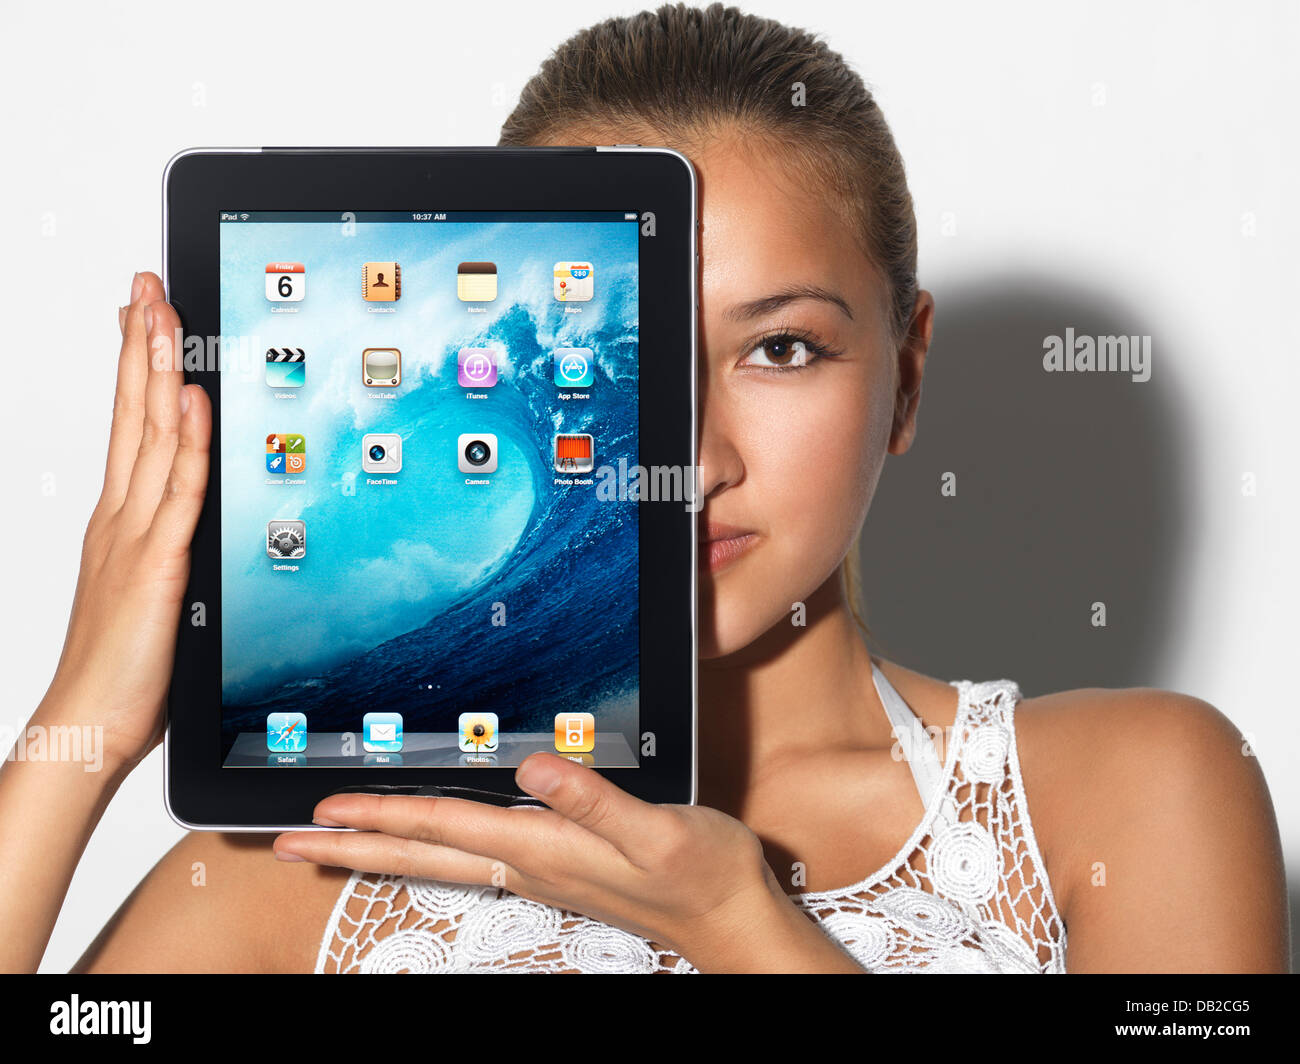 Licence disponible sur MaximImages.com - jeune femme asiatique souriante étudiant avec Apple iPad tablette dans ses mains Banque D'Images